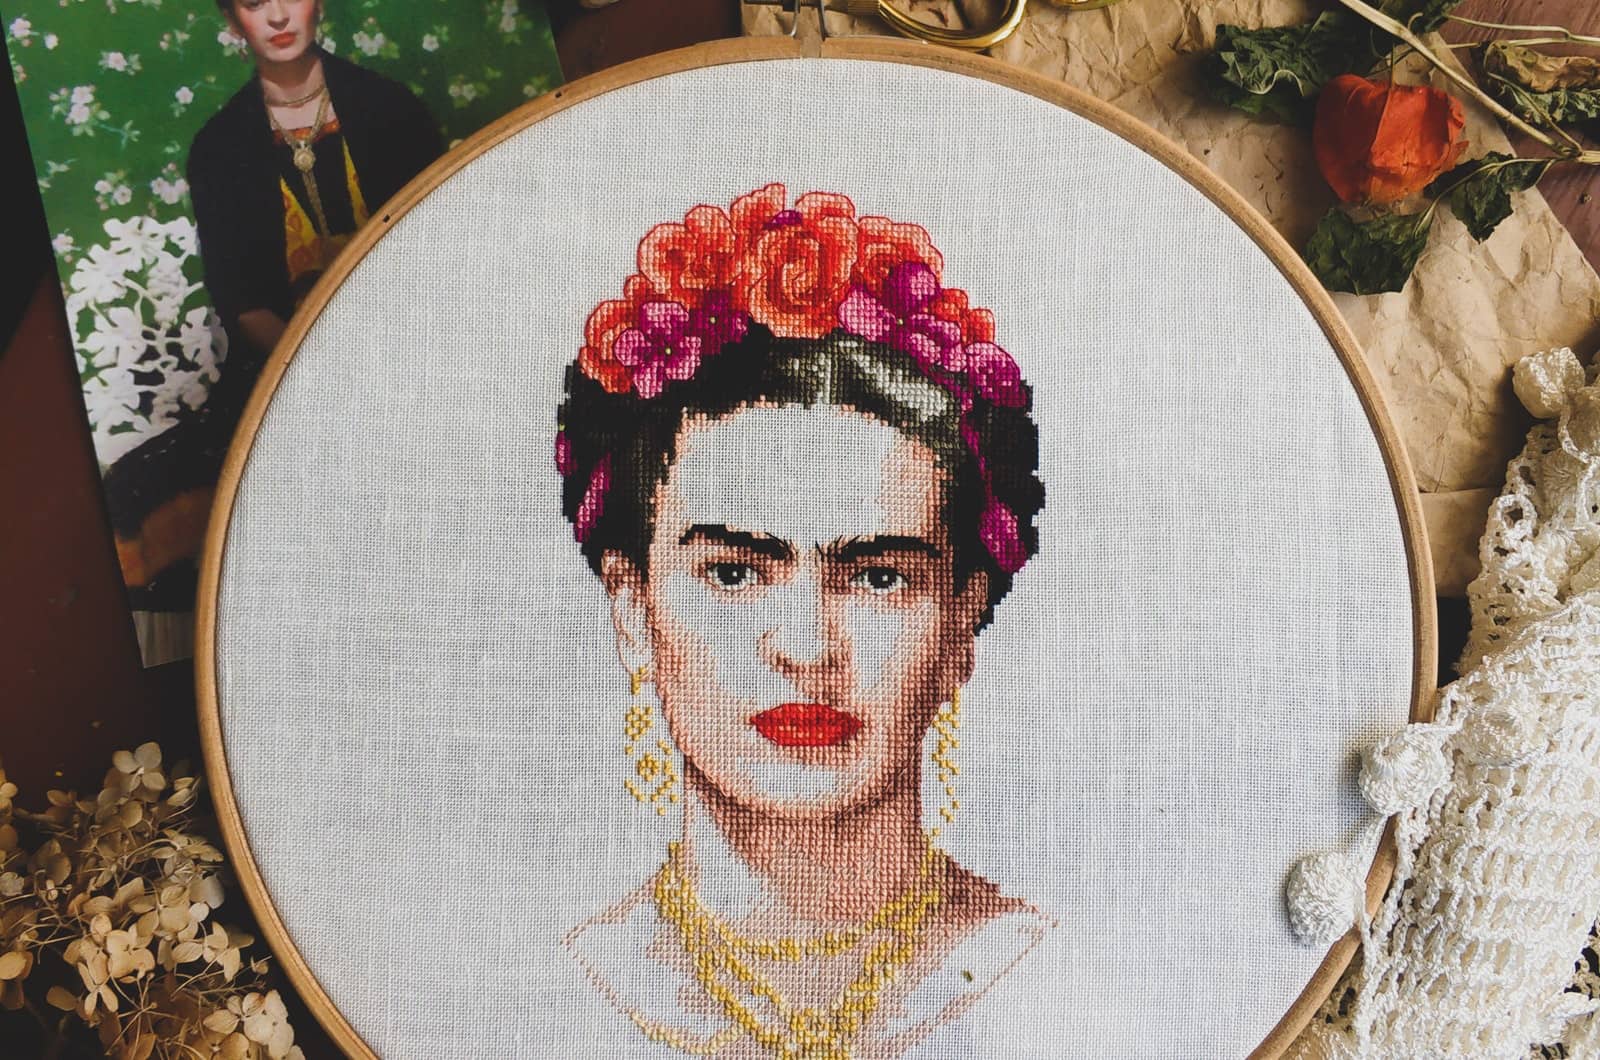 Frida Kahlo Zitate: Lebensweisheiten einer außergewöhnlichen Frau